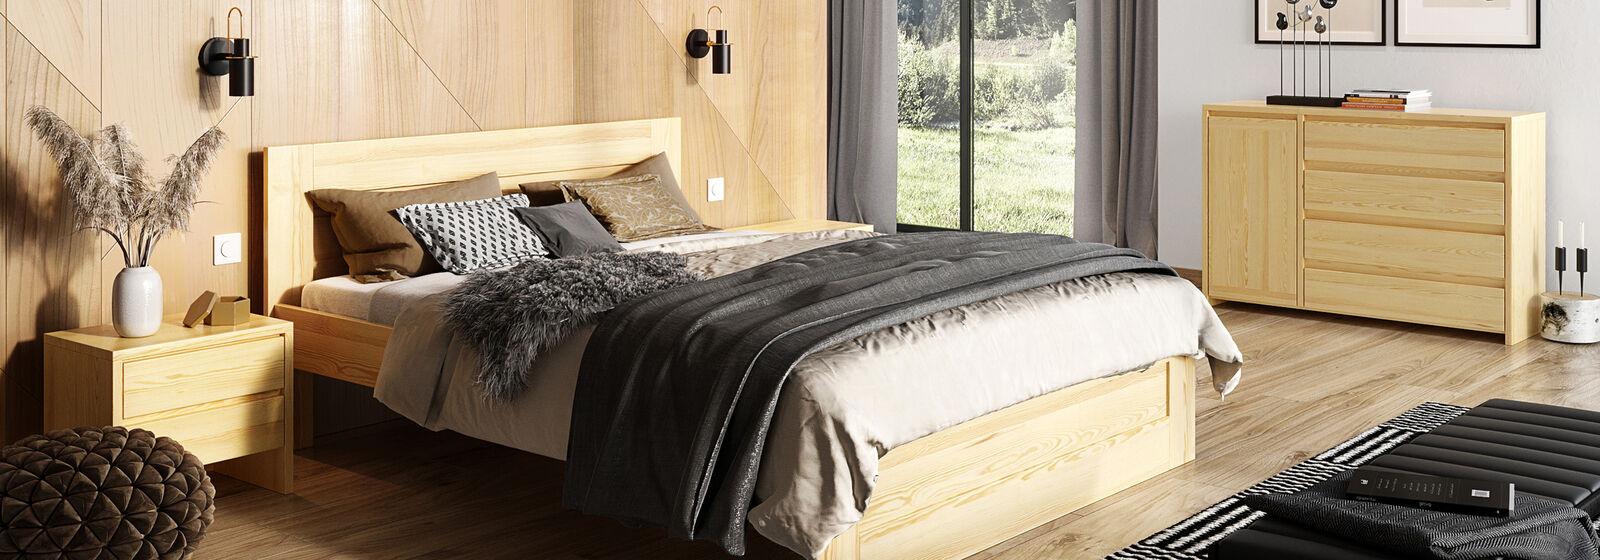 Schlafzimmer 3tlg. Set Echtes Holz Bett mit 2x Nachttische 180x200cm Massivholz